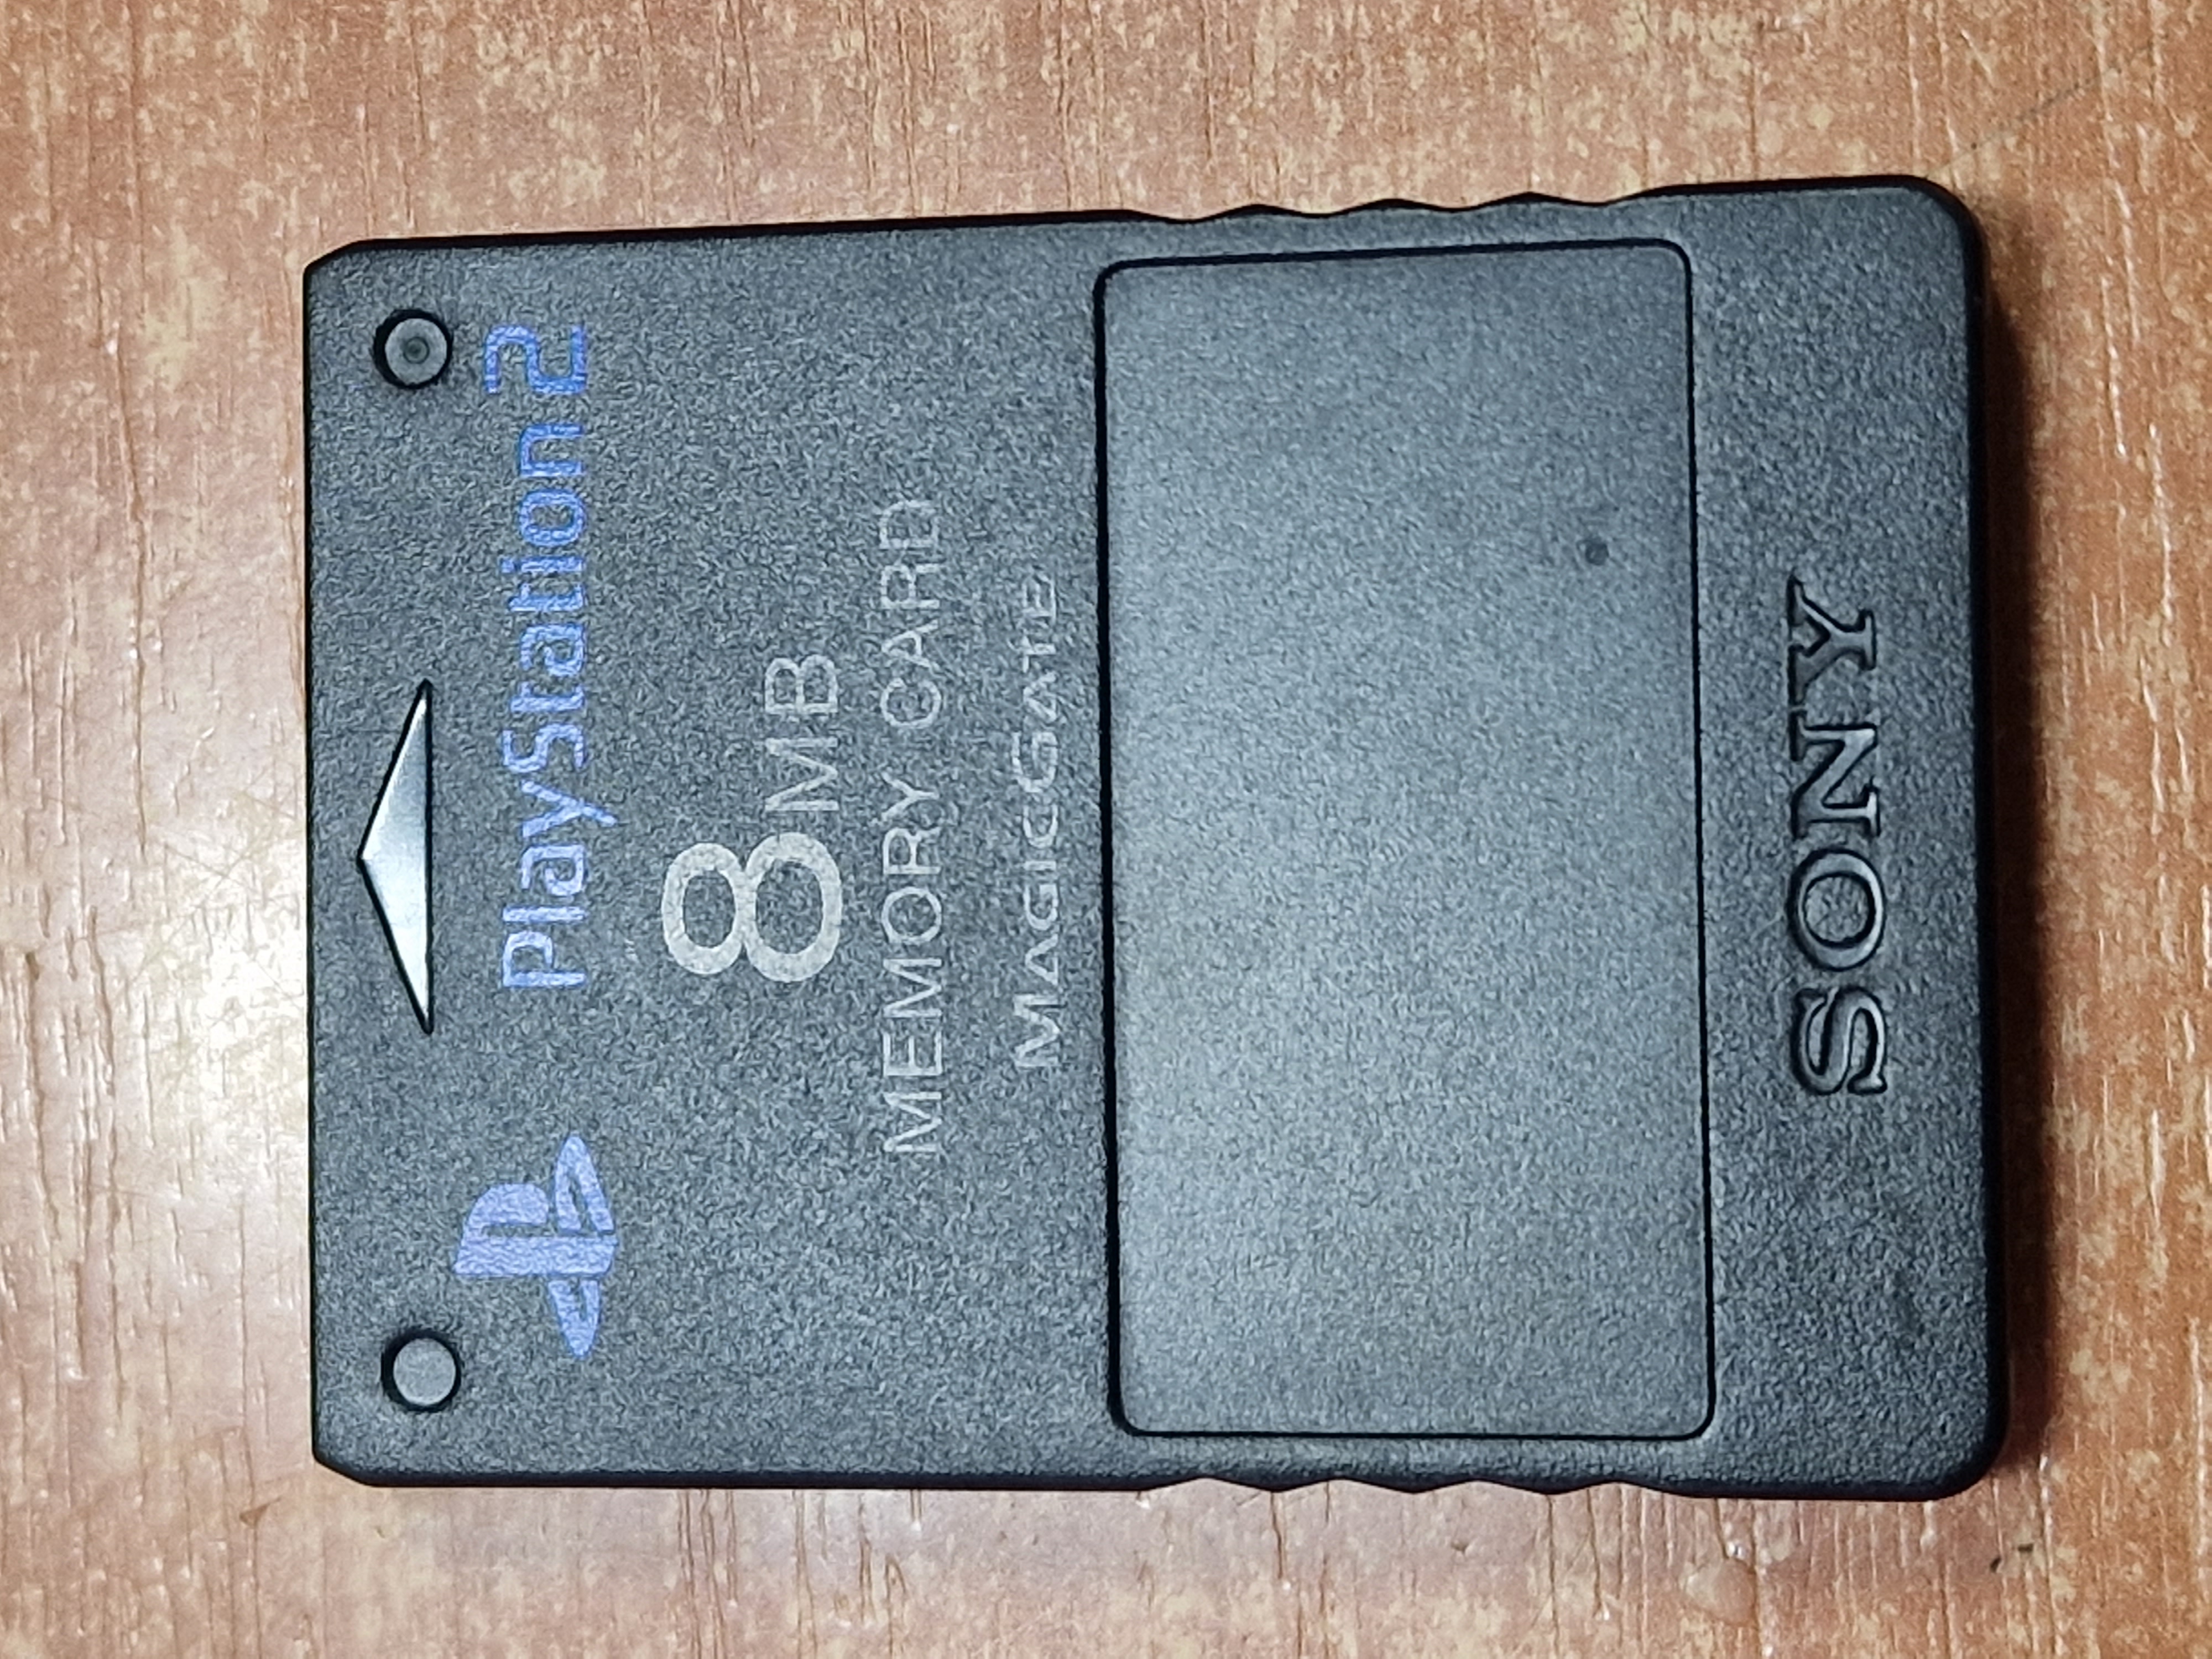 Memory card Sony Playstation 8MB (PS2) černá